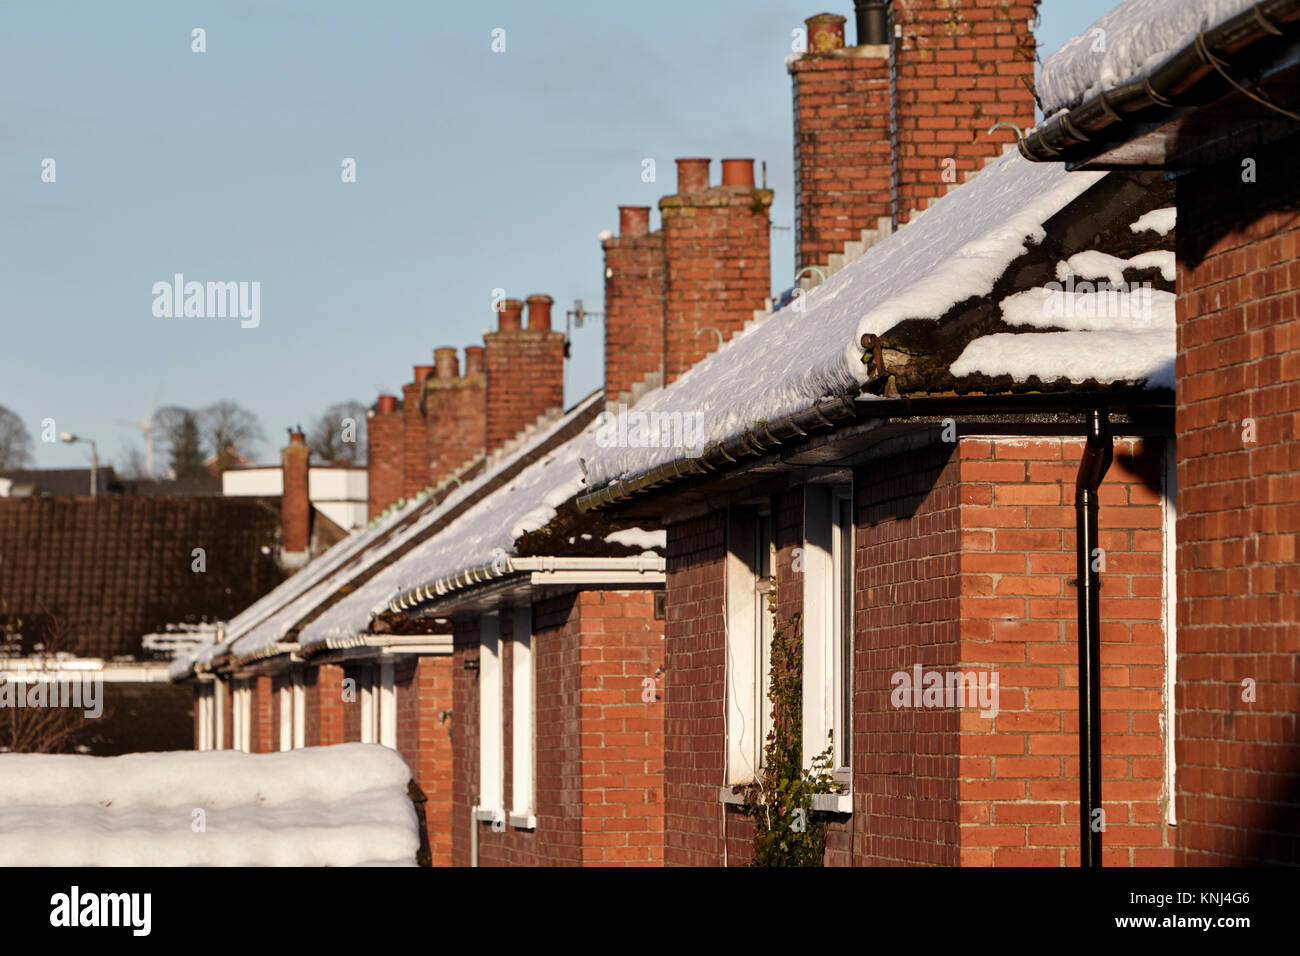 Ses toits couverts de neige du parc de logements anciens newtownabbey irlande du nord uk Banque D'Images